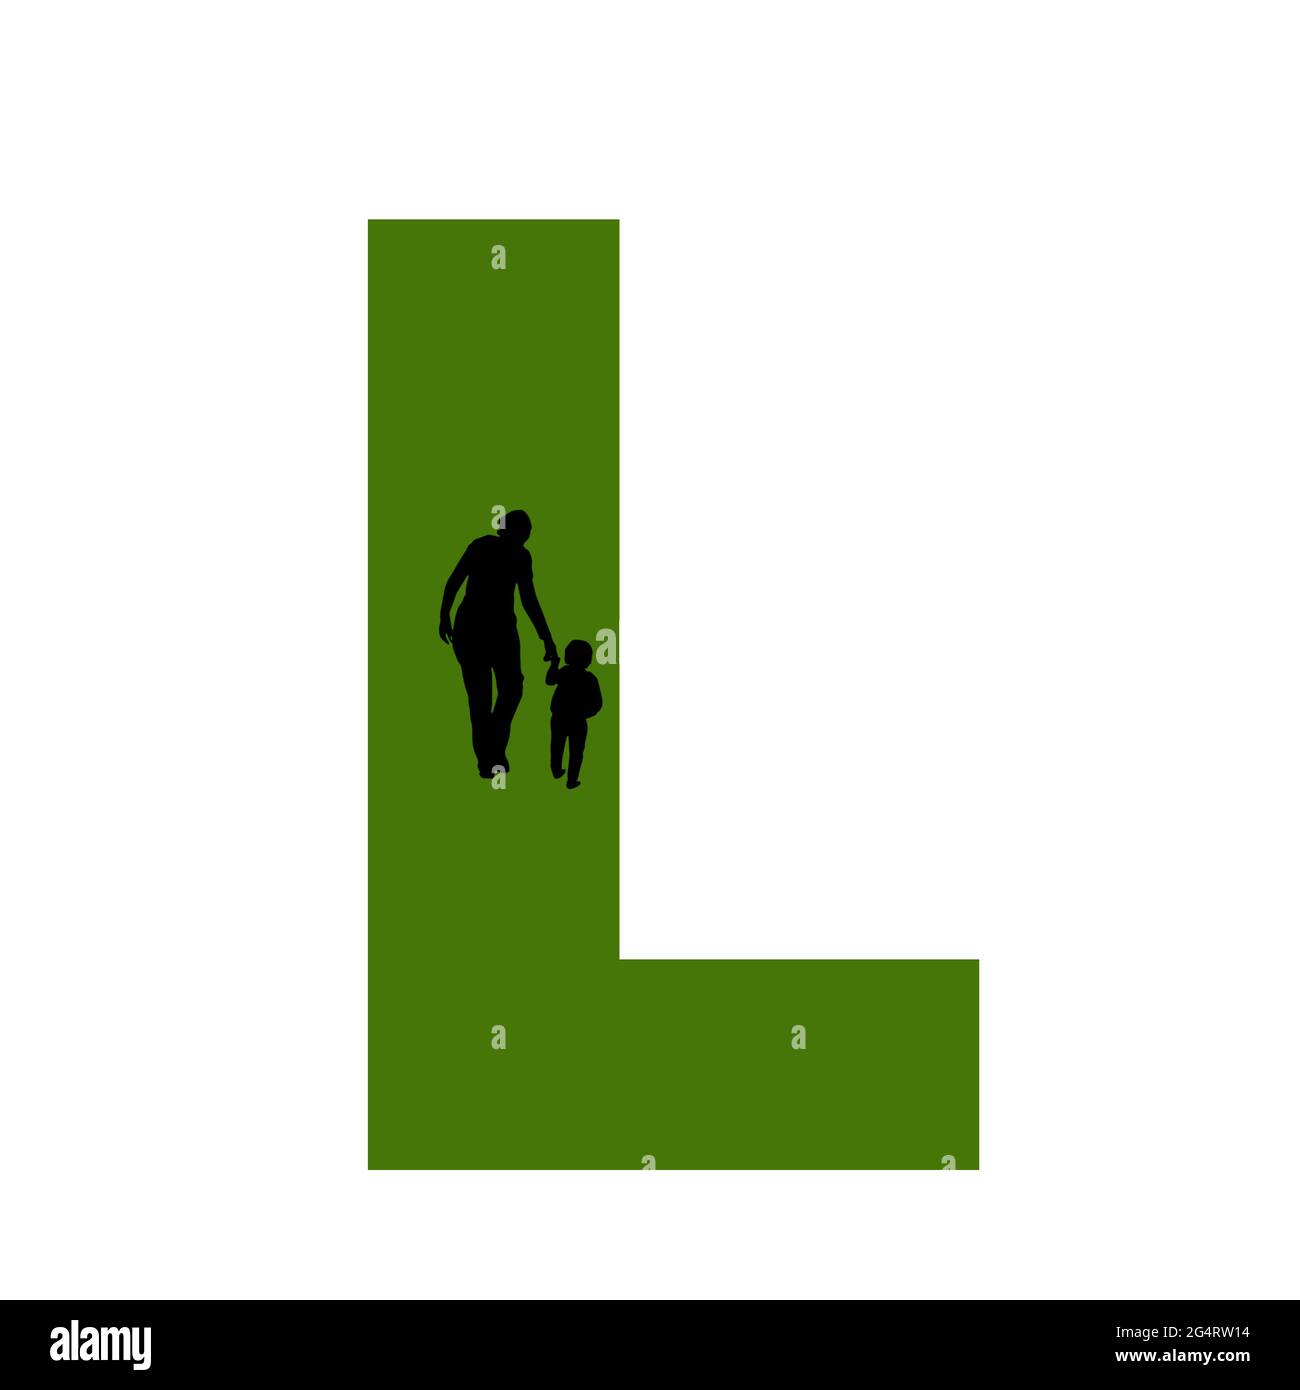 Lettre L de l'alphabet avec silhouette d'une mère et d'un enfant marchant, en vert et noir Banque D'Images